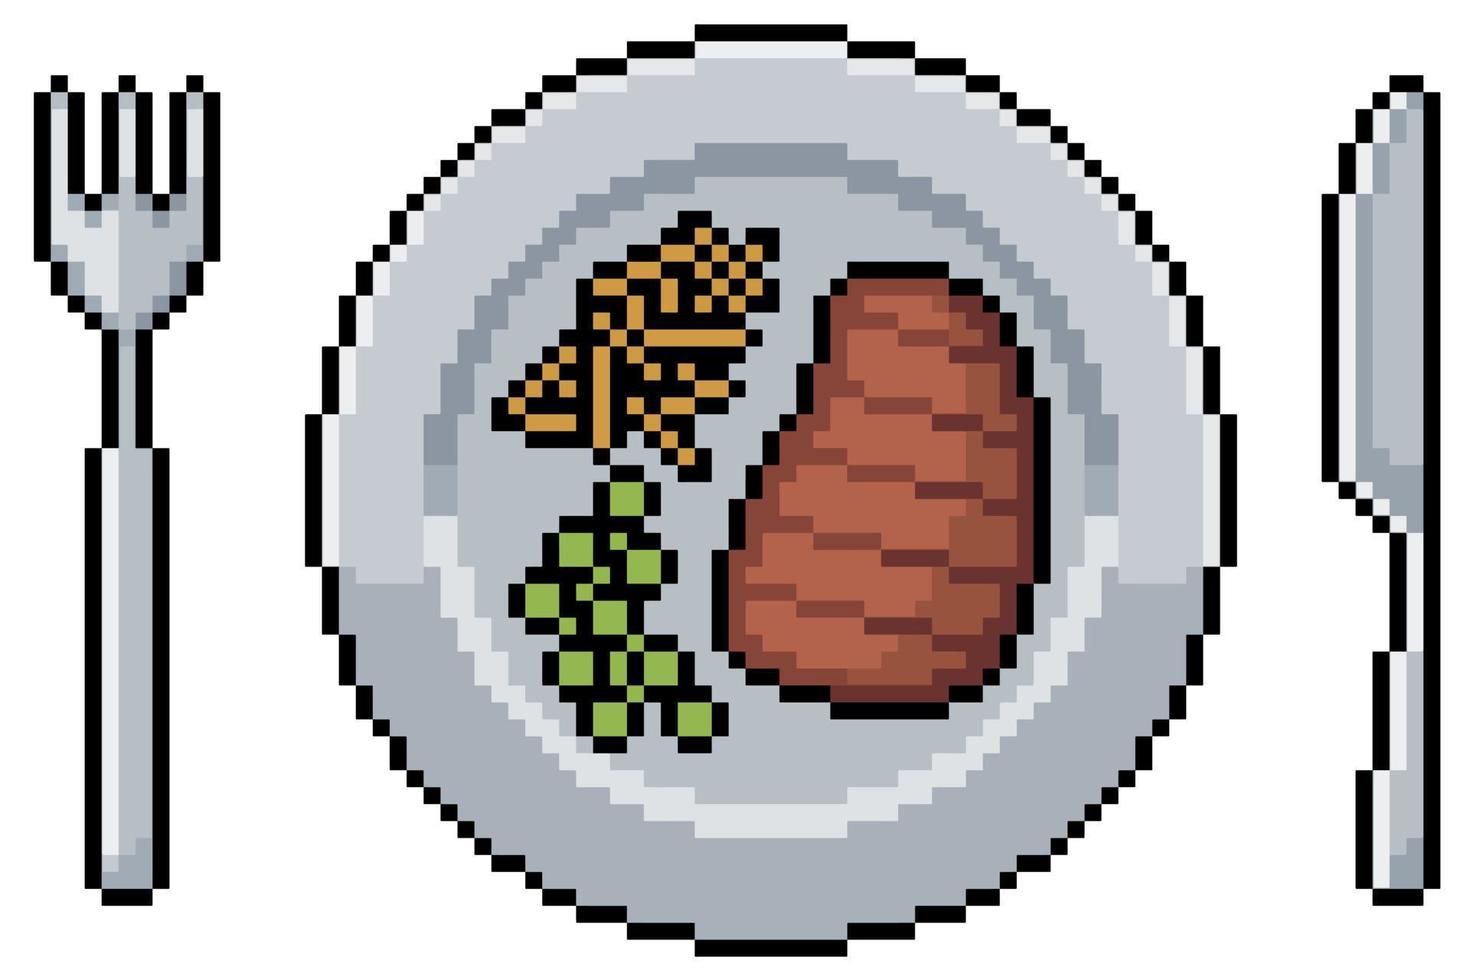 repas pixel art avec steak, frites et petits pois. assiette, fourchette et couteau. élément de jeu 8 bits vecteur